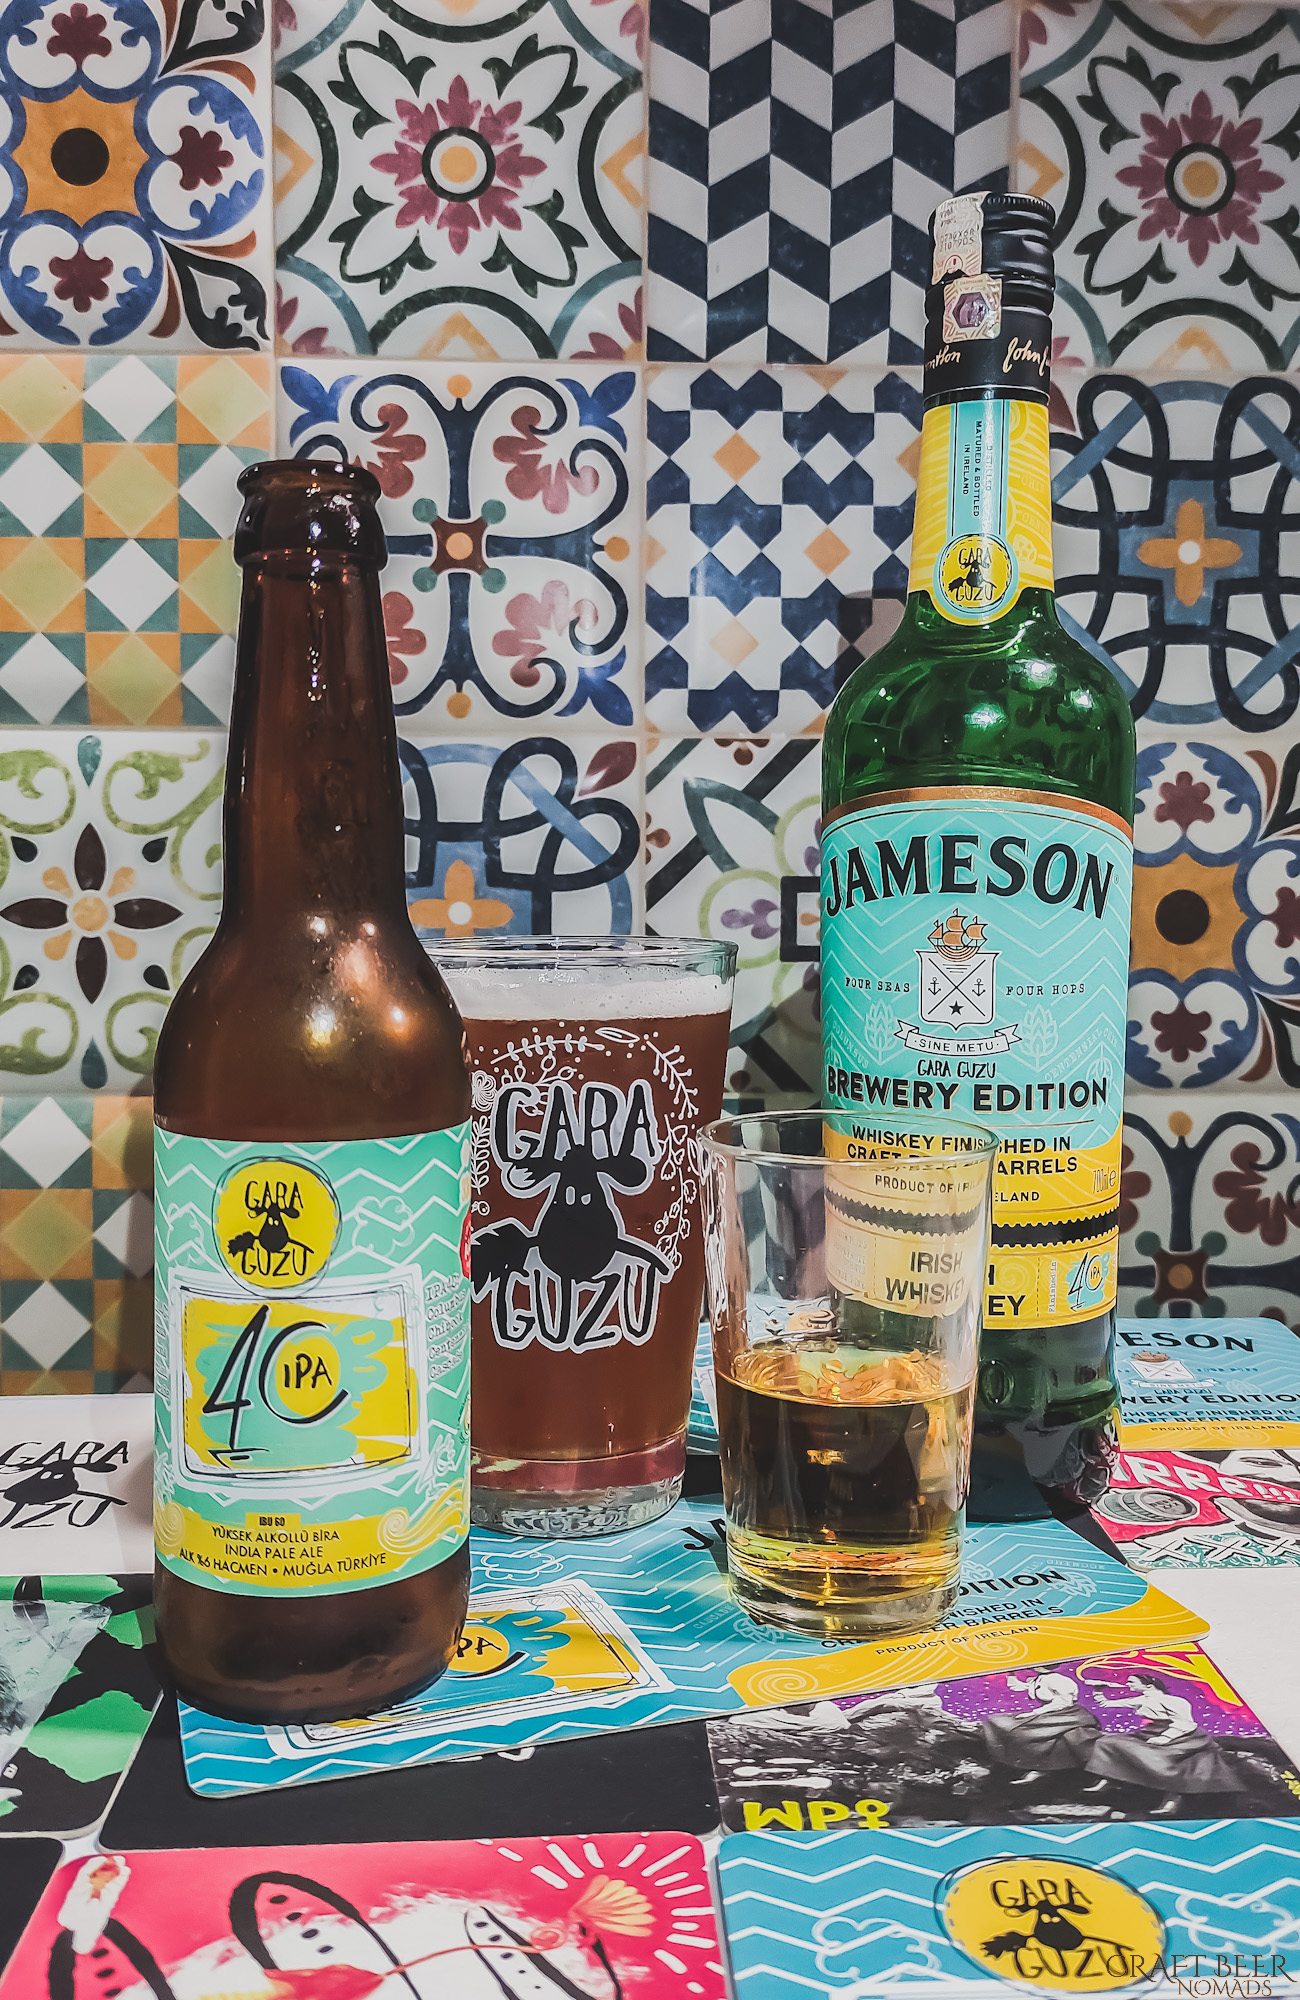 Gara Guzu - 4IPA and Jameson Whiskey